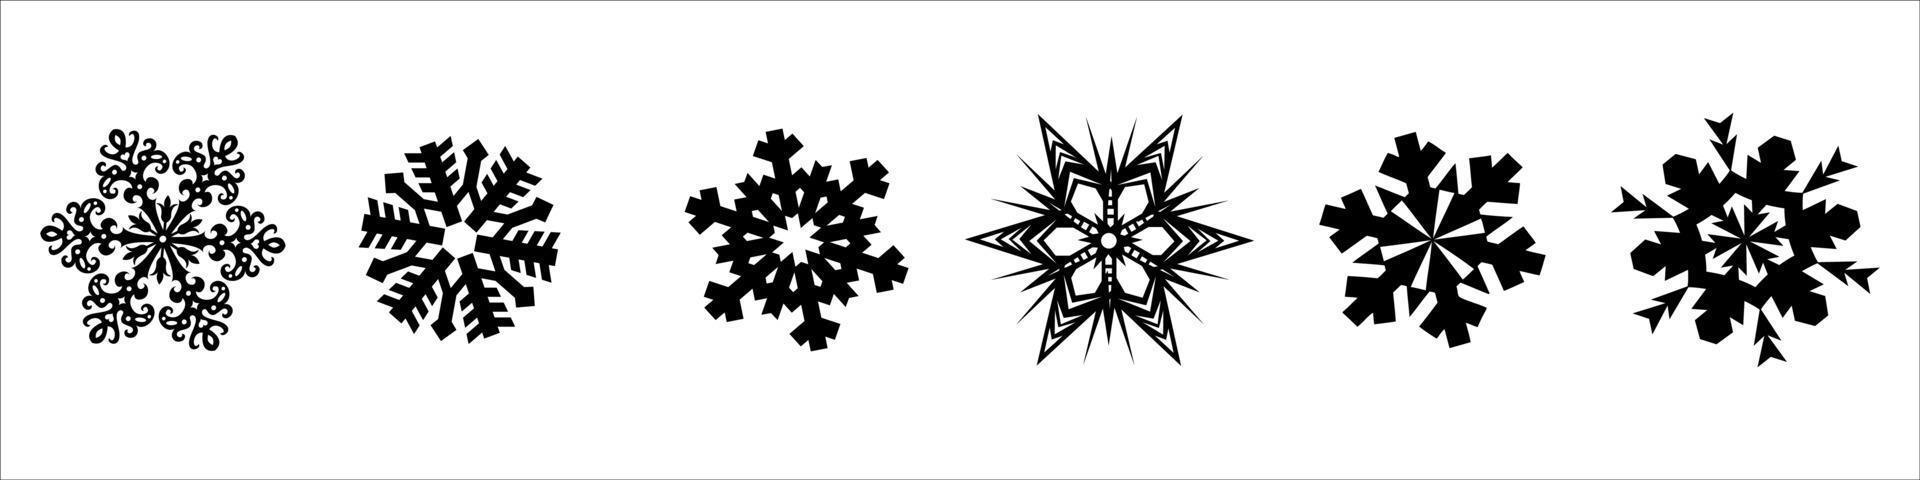 sneeuwvlokken vector collectie